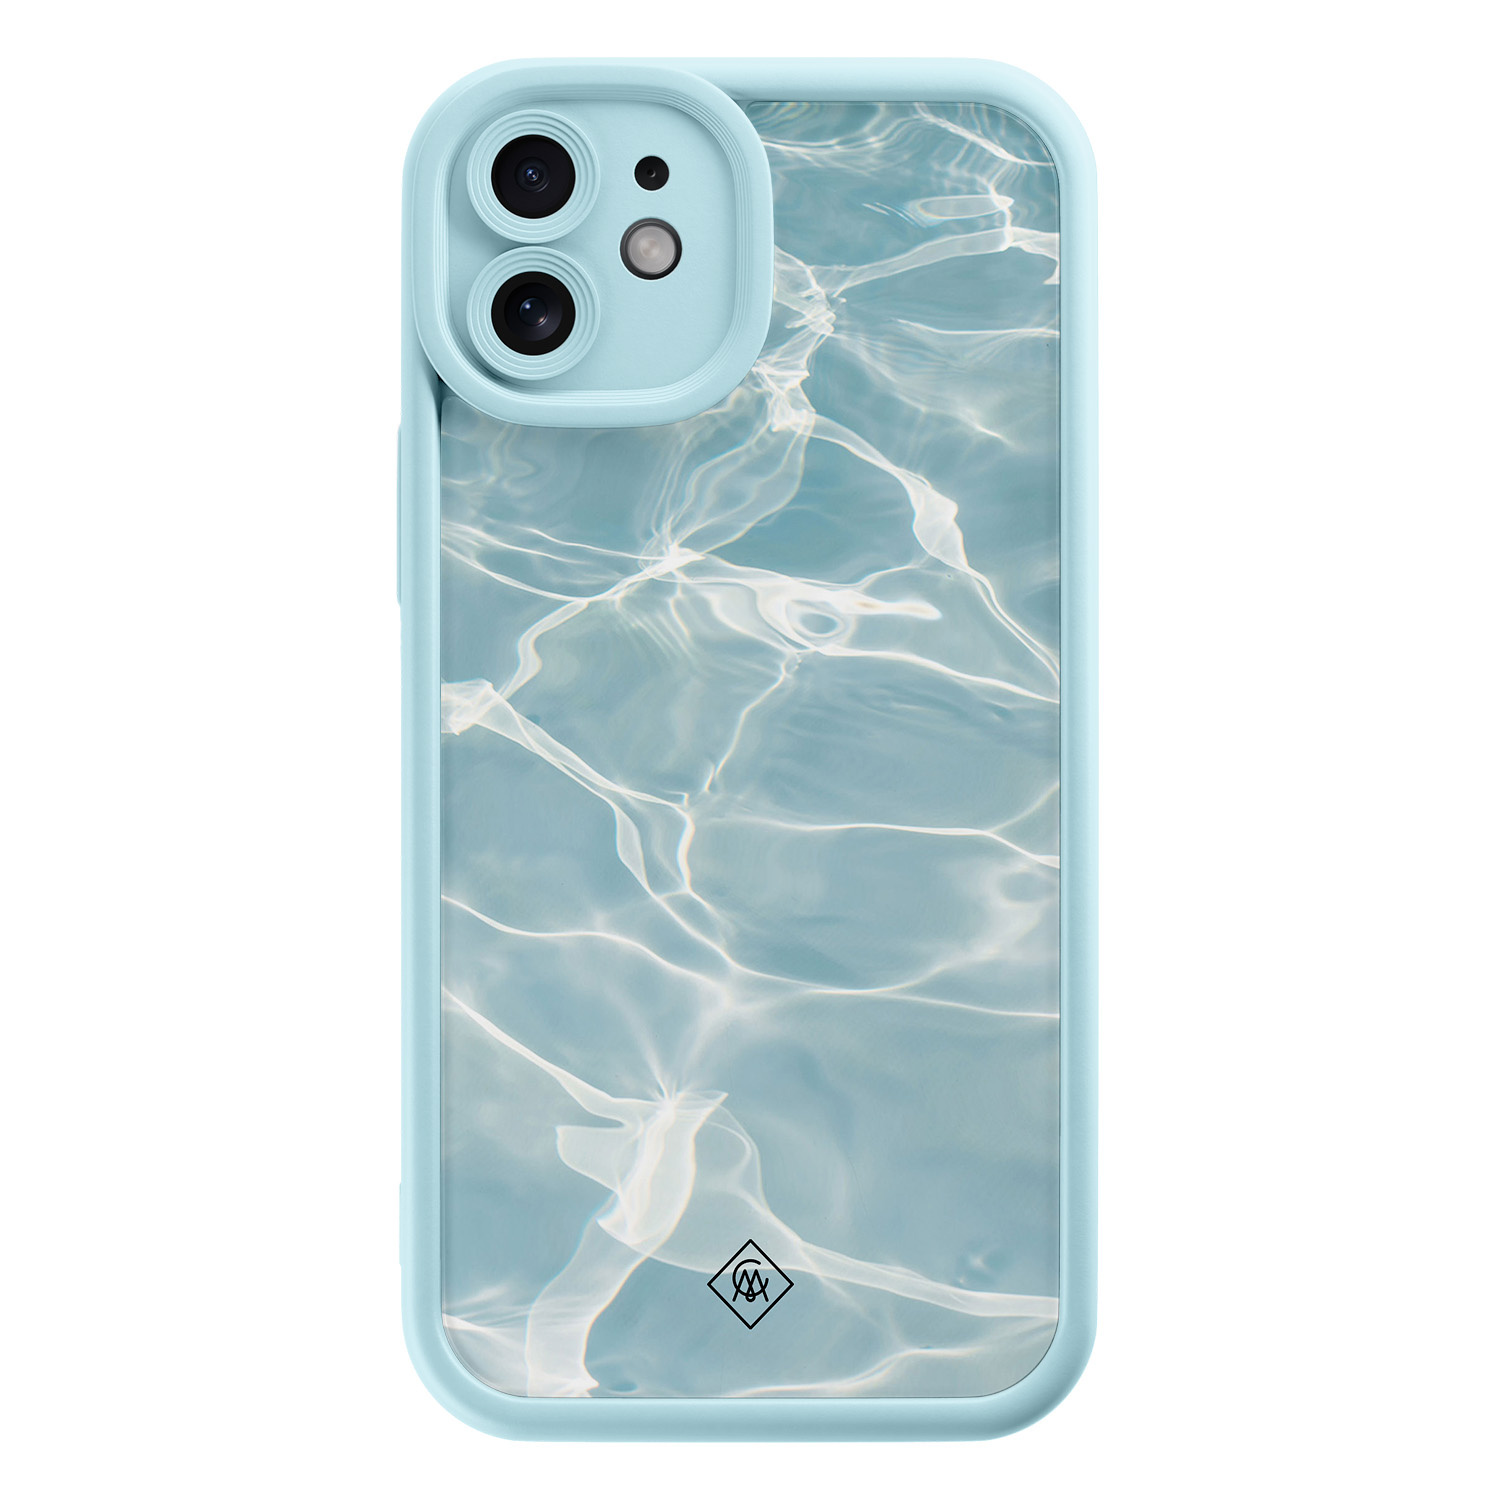 iPhone 12 blauwe case - Aqua wave